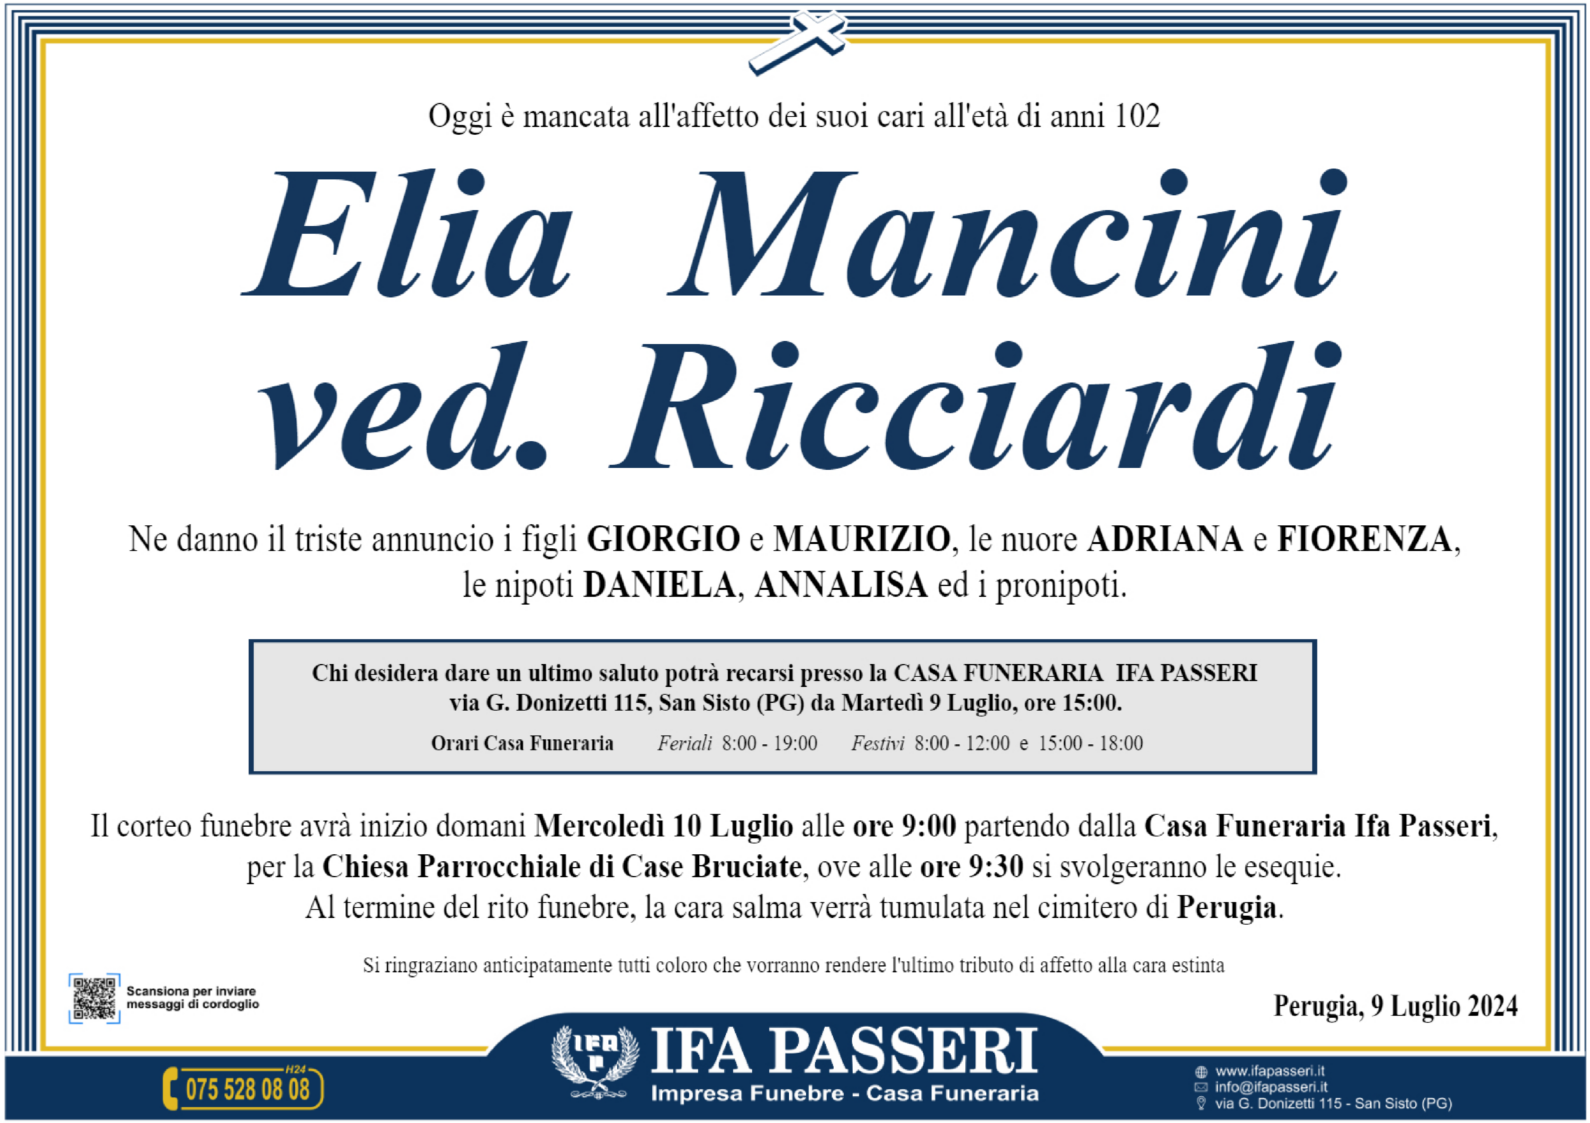 Elia Mancini ved. Ricciardi